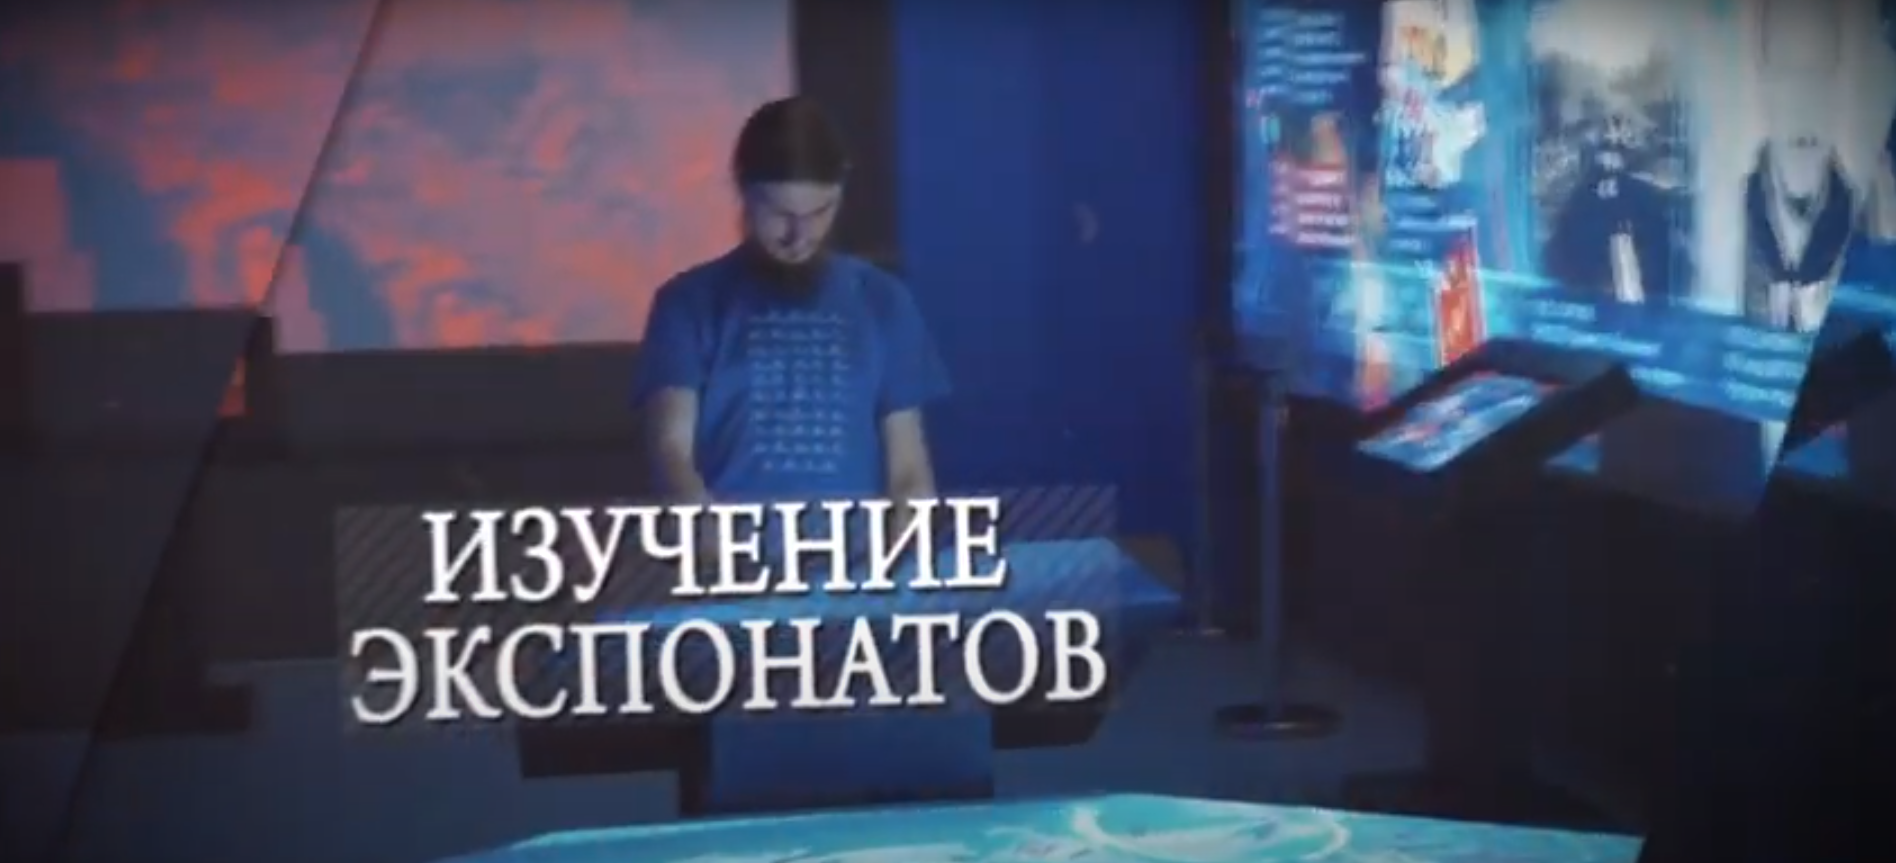 Презентационный видеоролик для проекта: "Россия – Моя история"